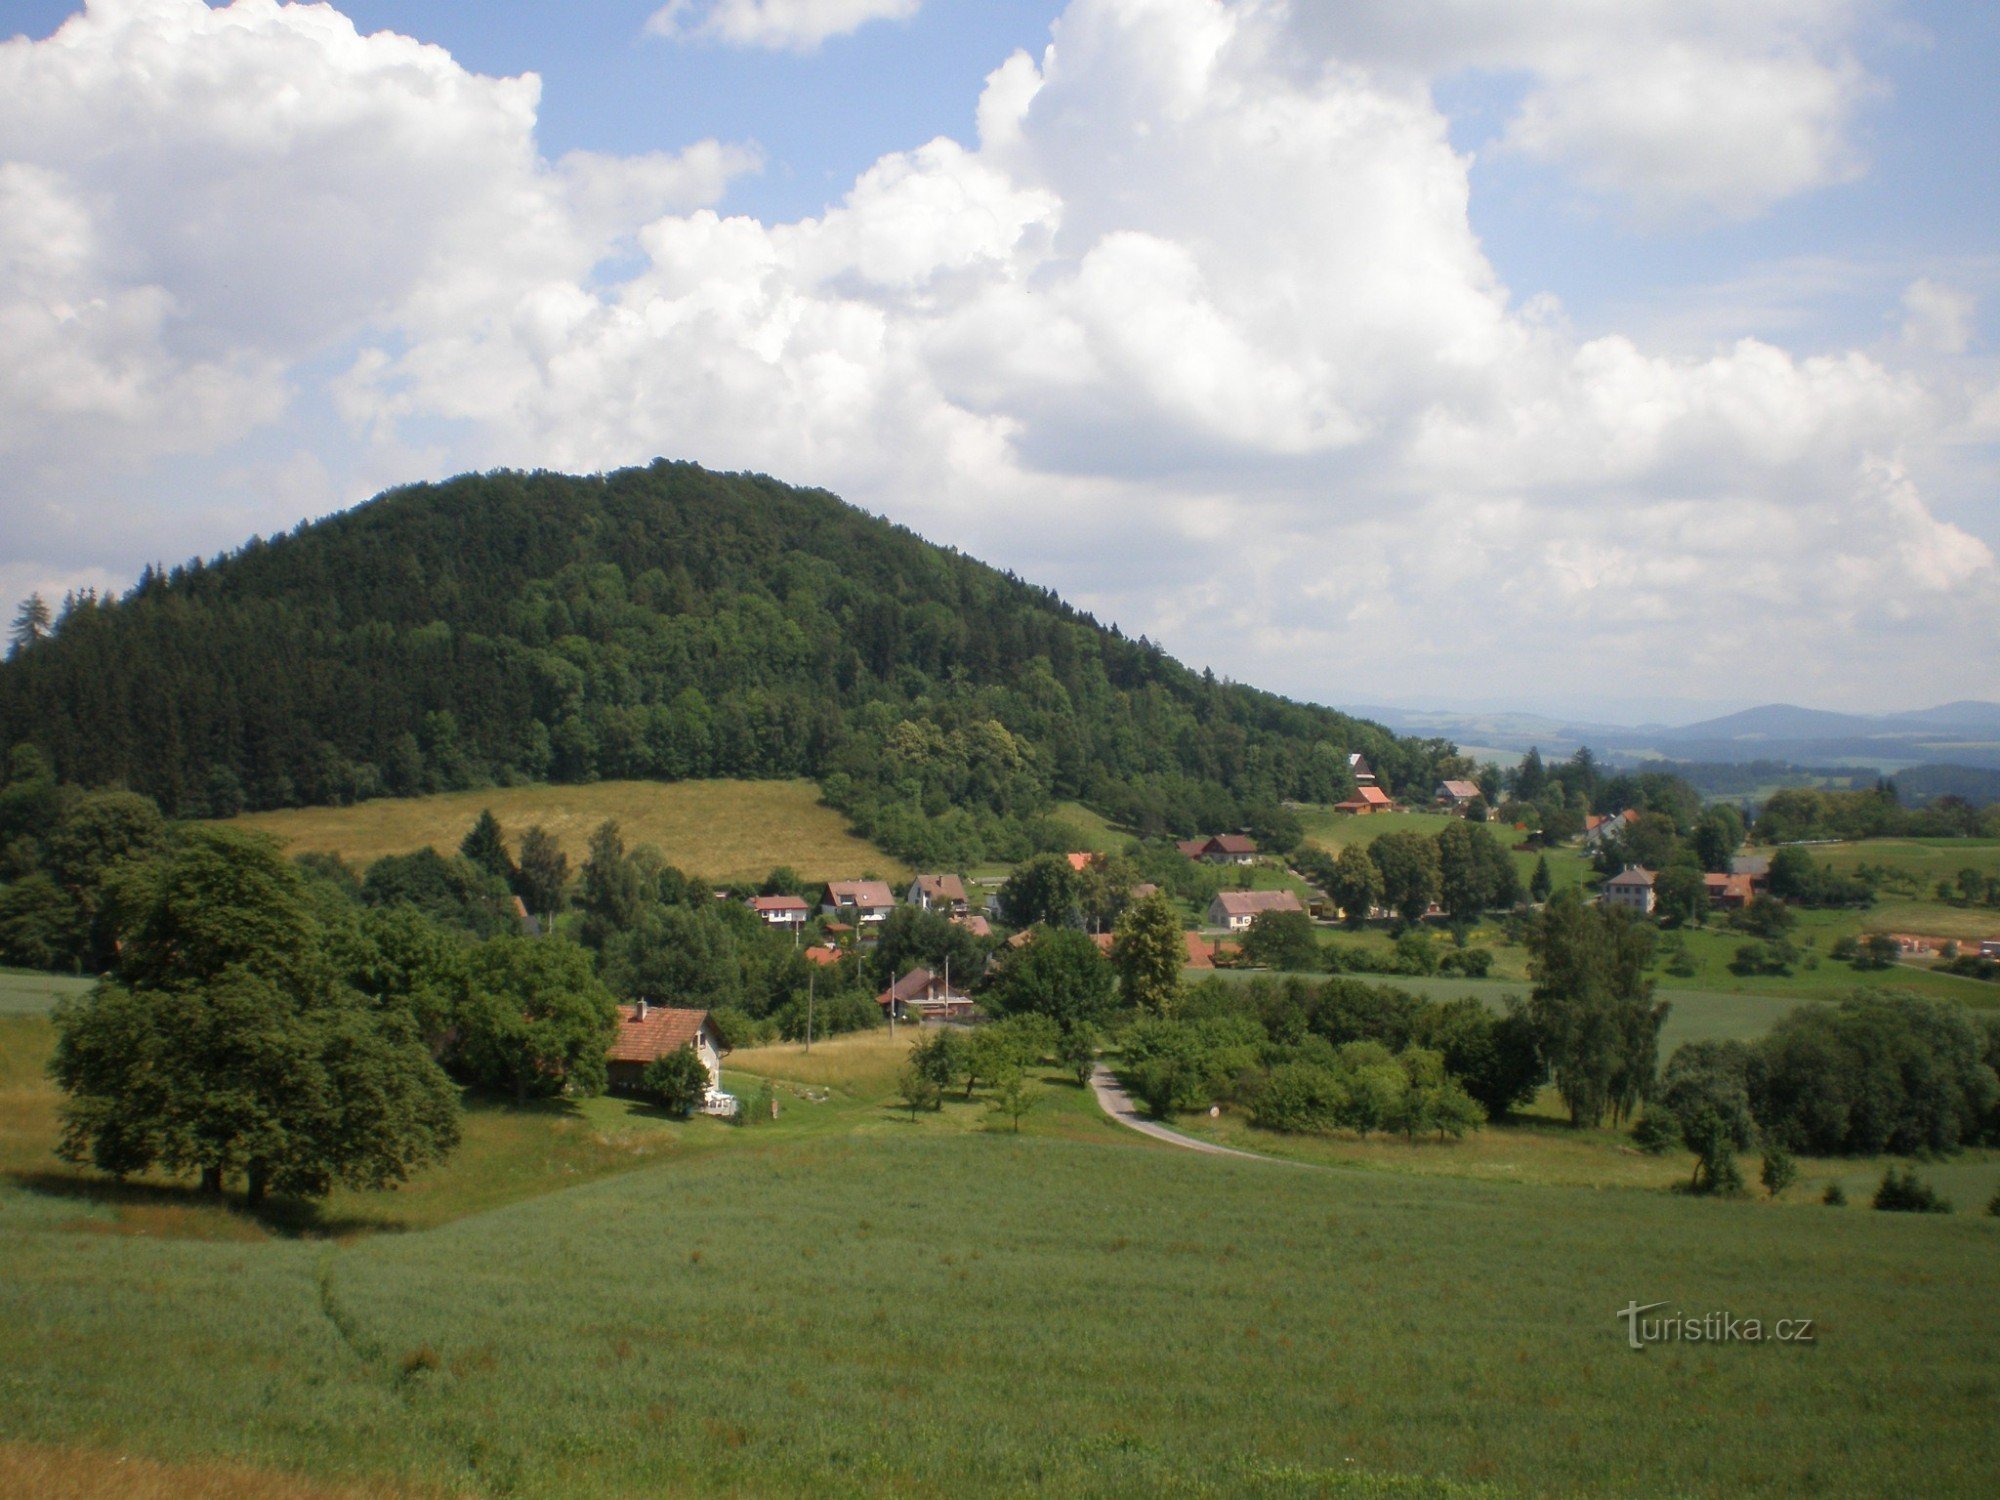 View of Žampach